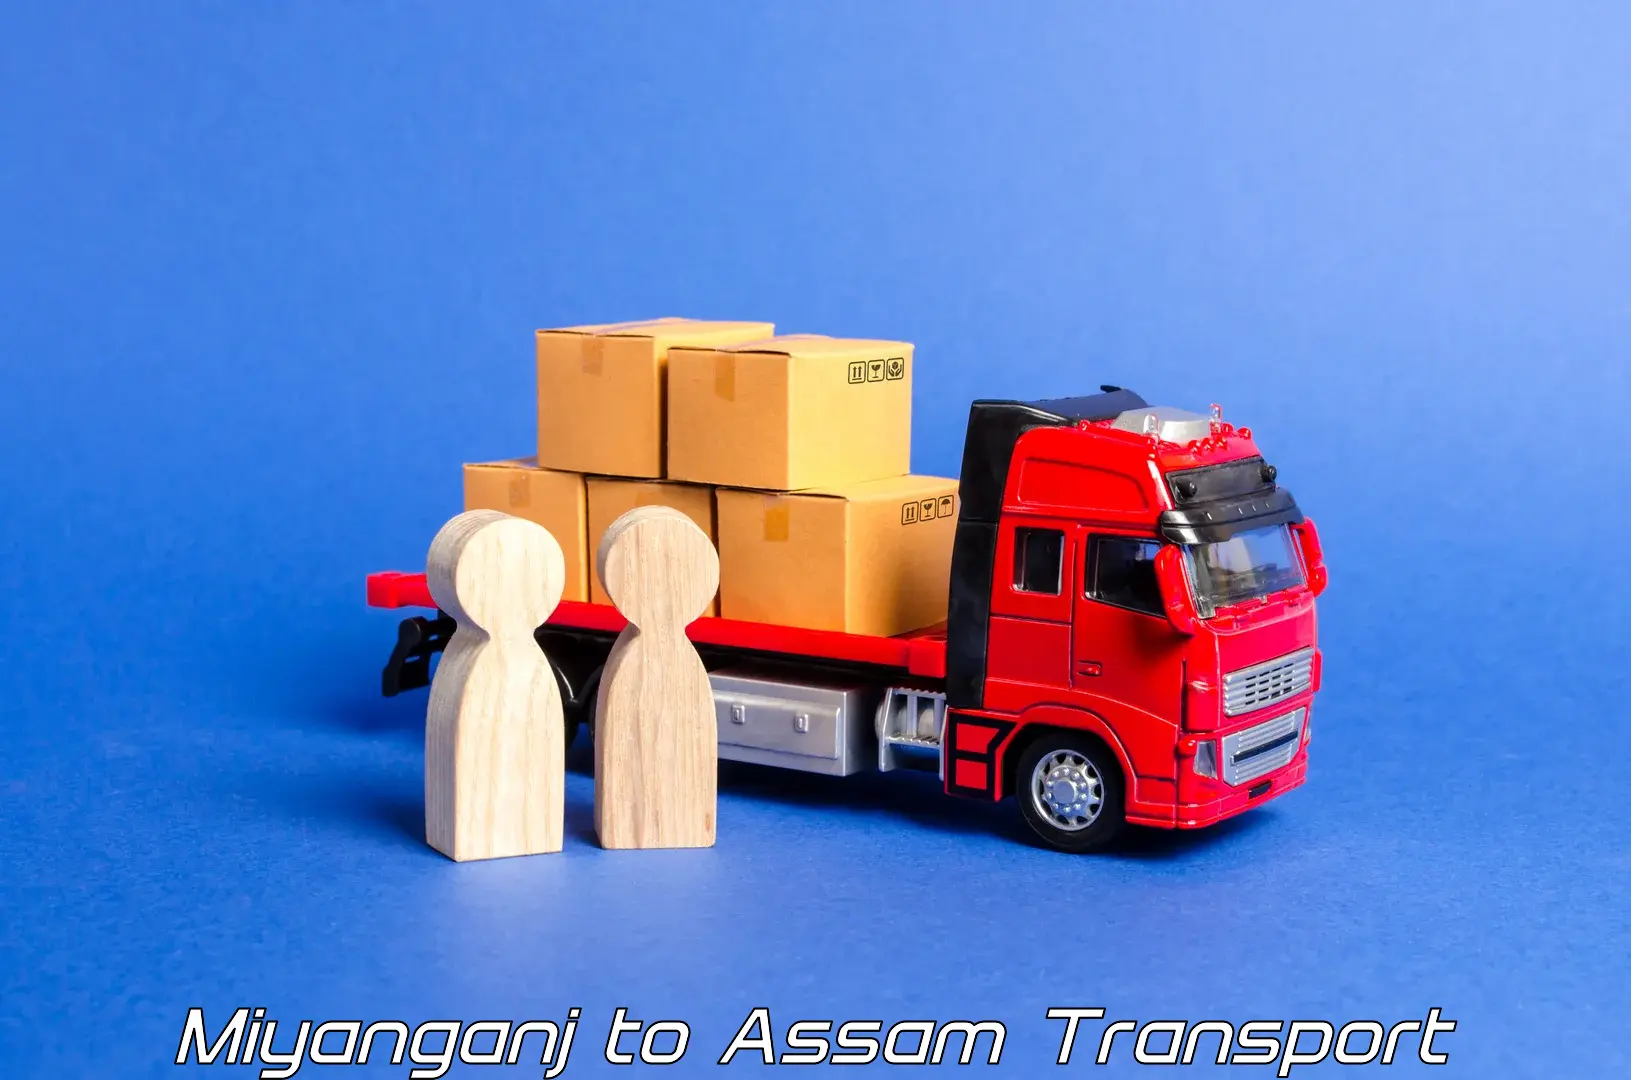 Vehicle transport services Miyanganj to Kalaigaon